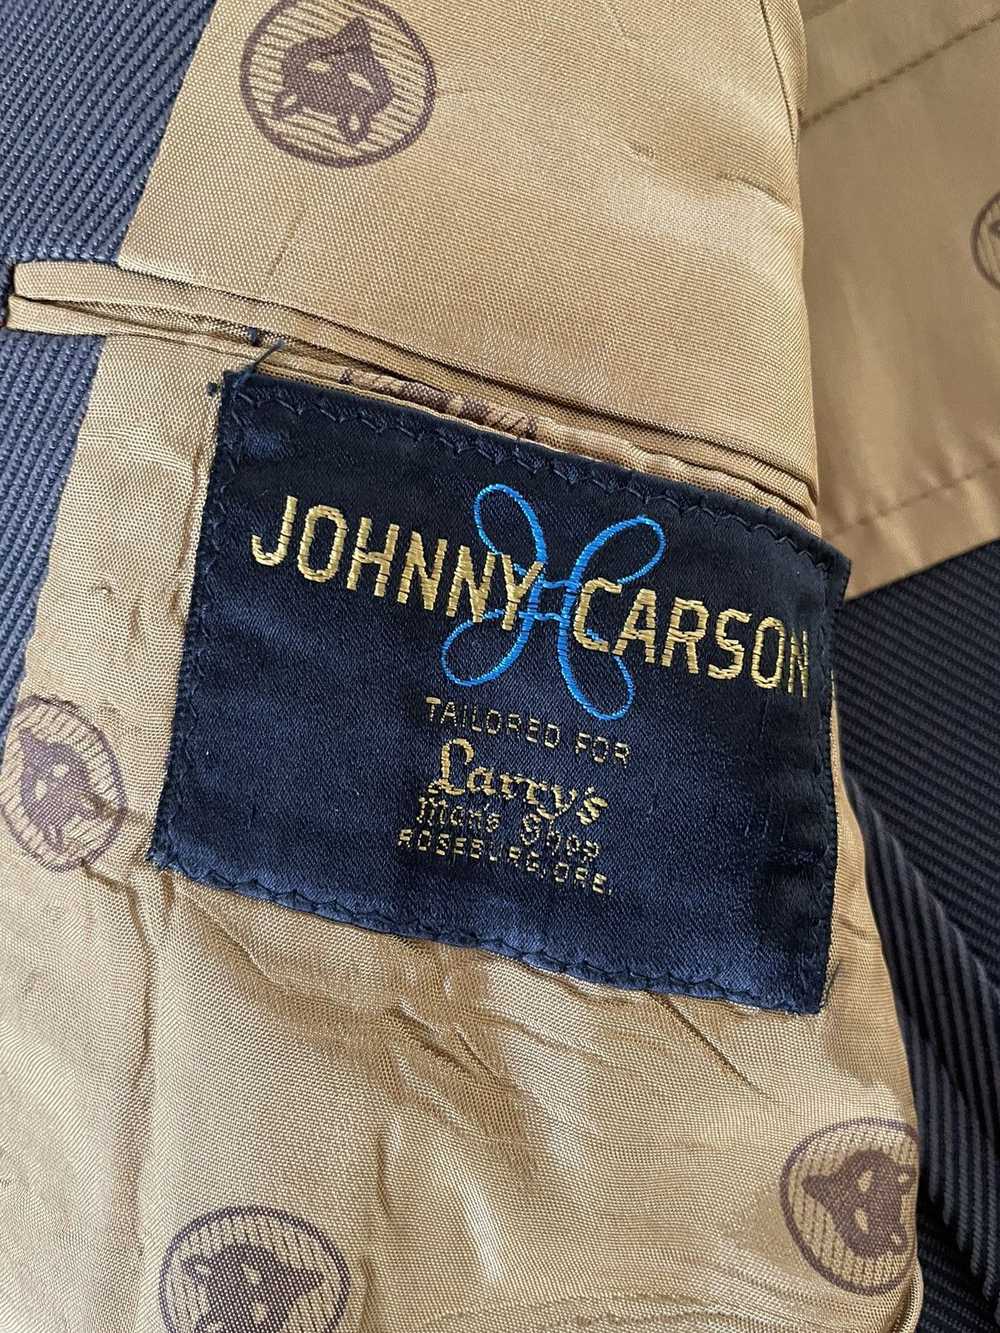 Vintage Johnny Carson Vintage 1970’s Suit - image 10